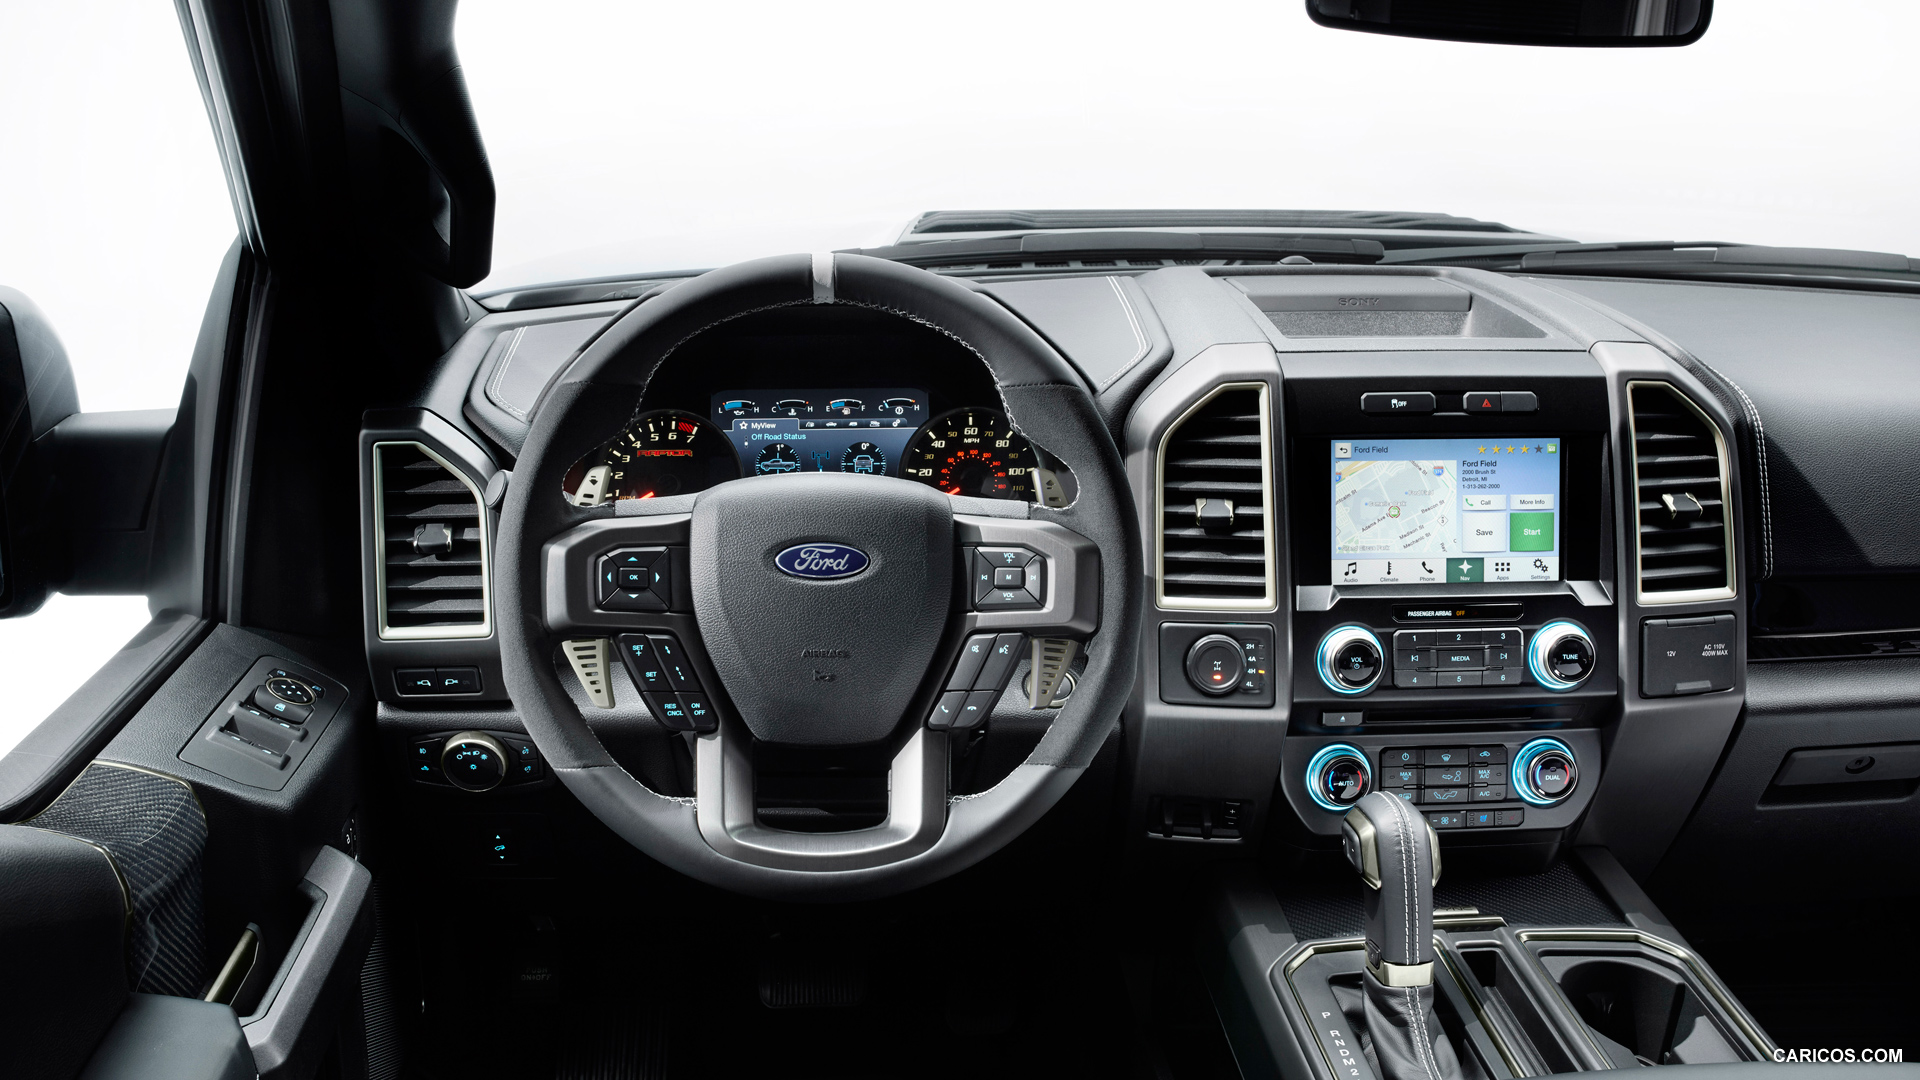 Ford Focus 2014 Sedan Titanium